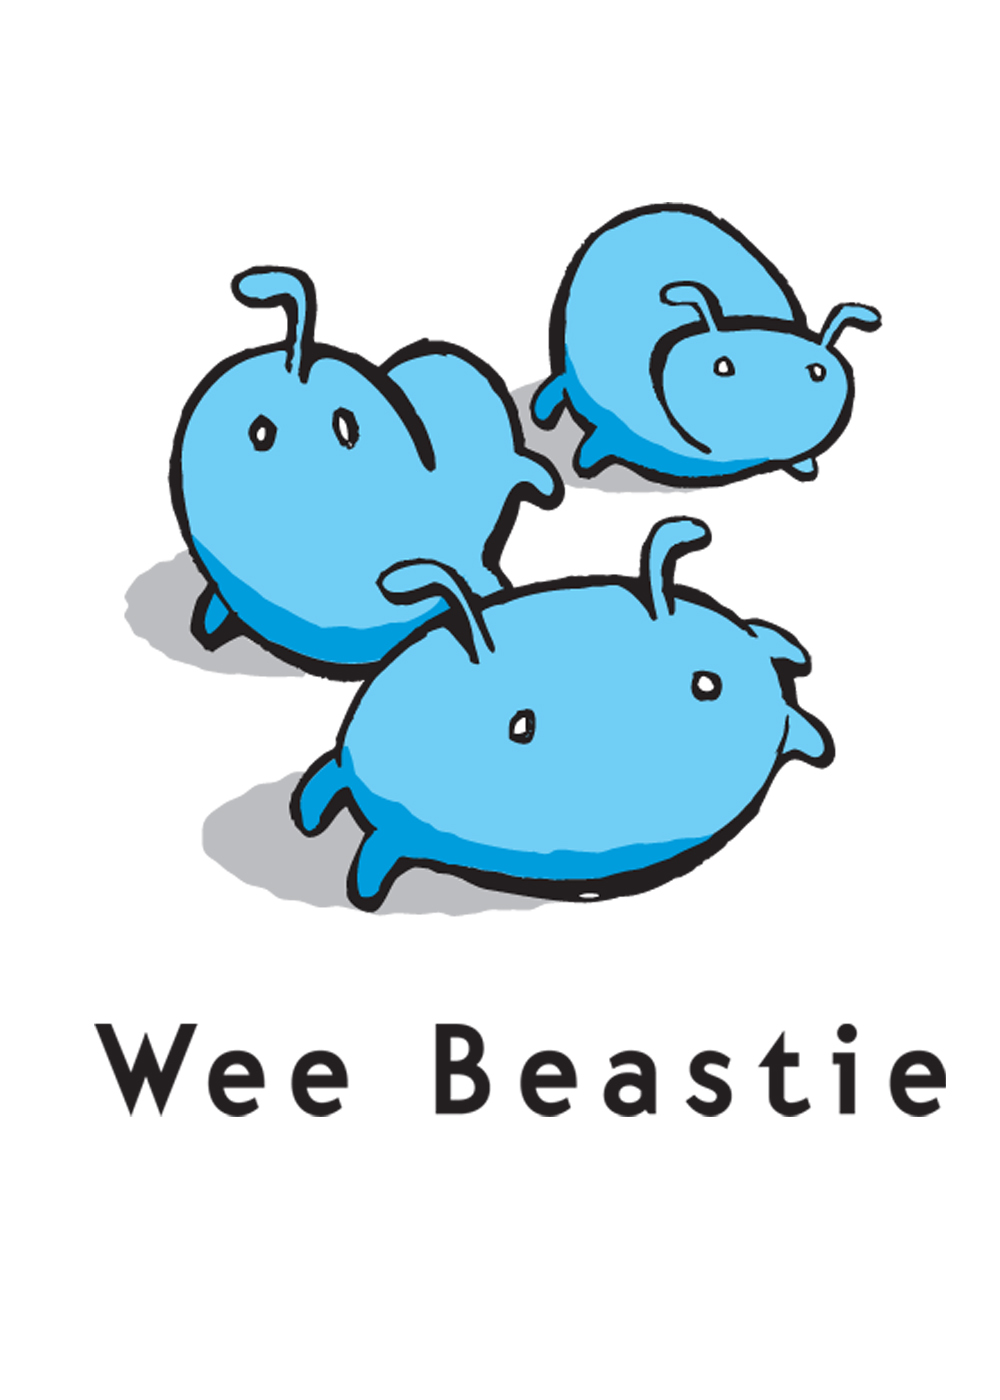 Wee Beastie